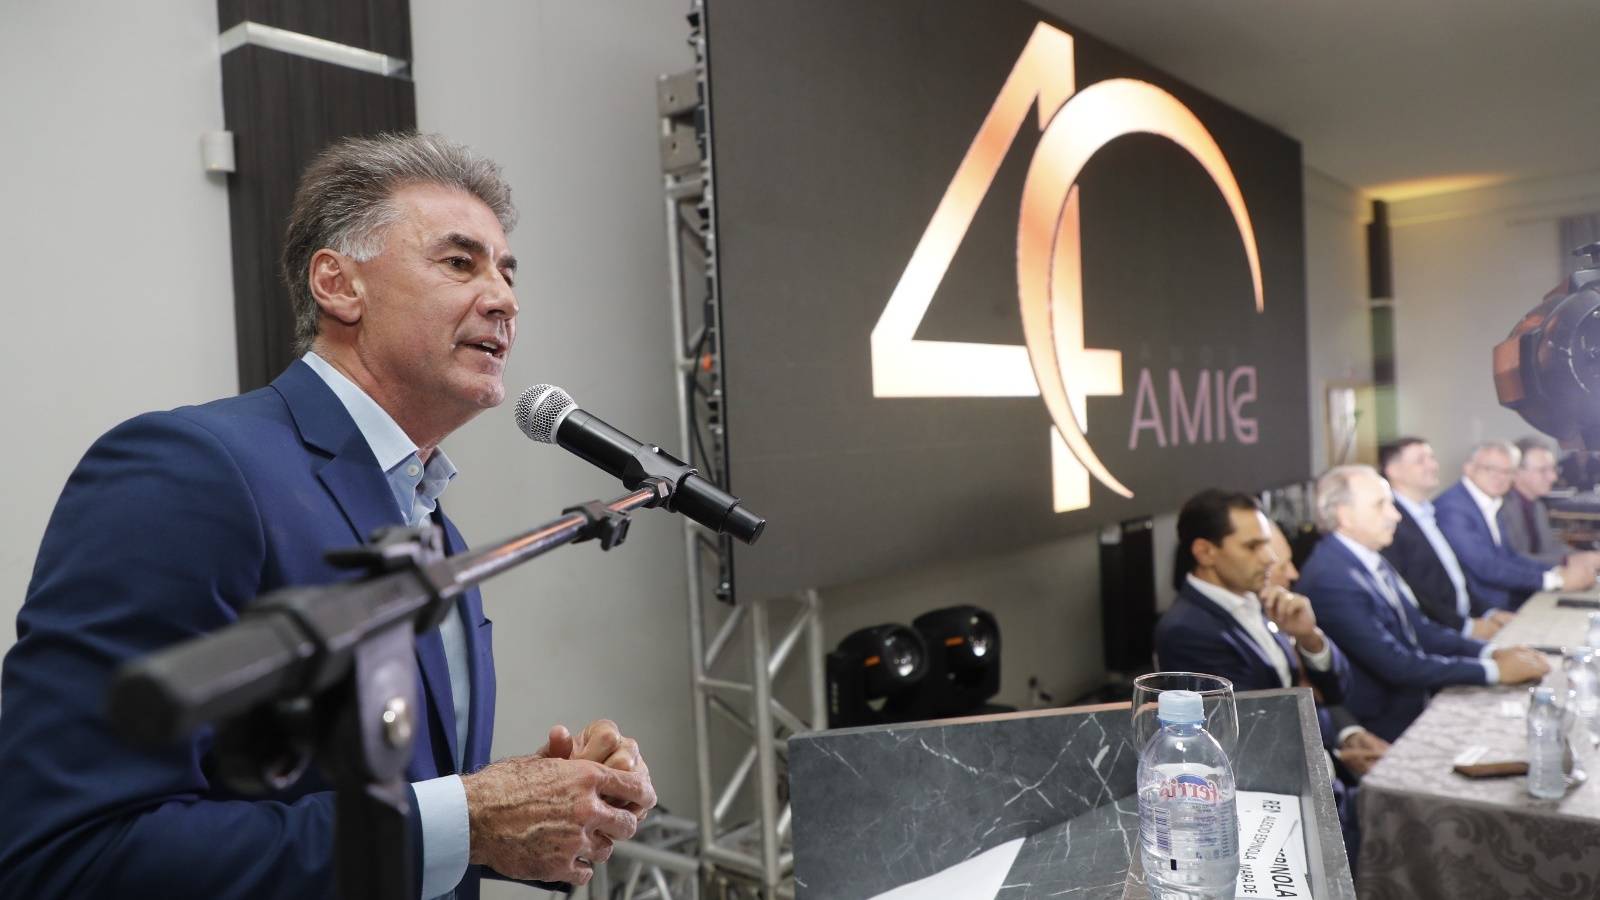 AMIC comemora 40 Anos com homenagem à força do empreendedorismo local